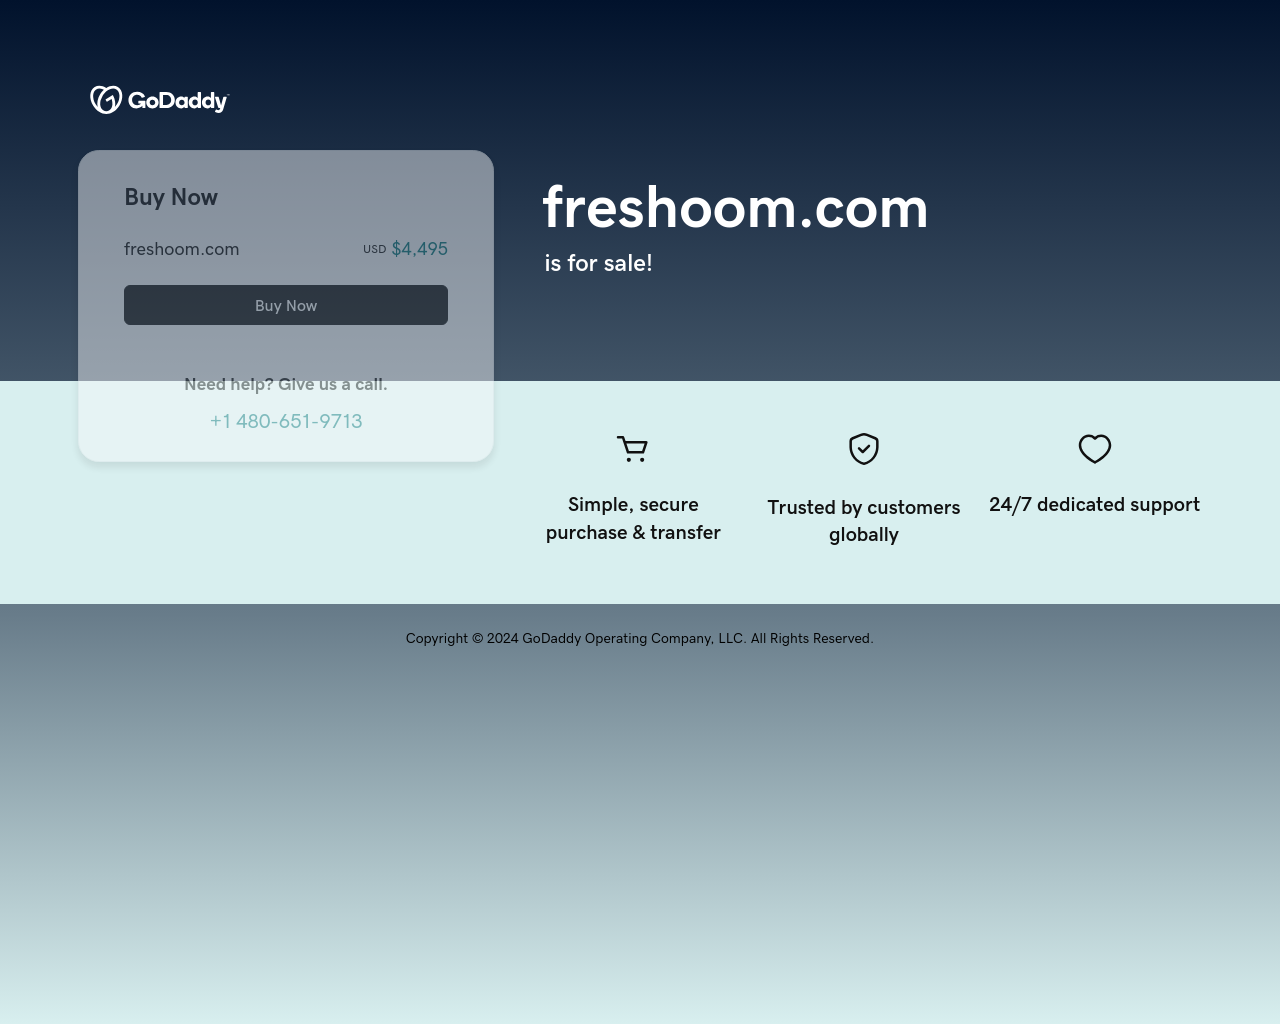 freshoom.com